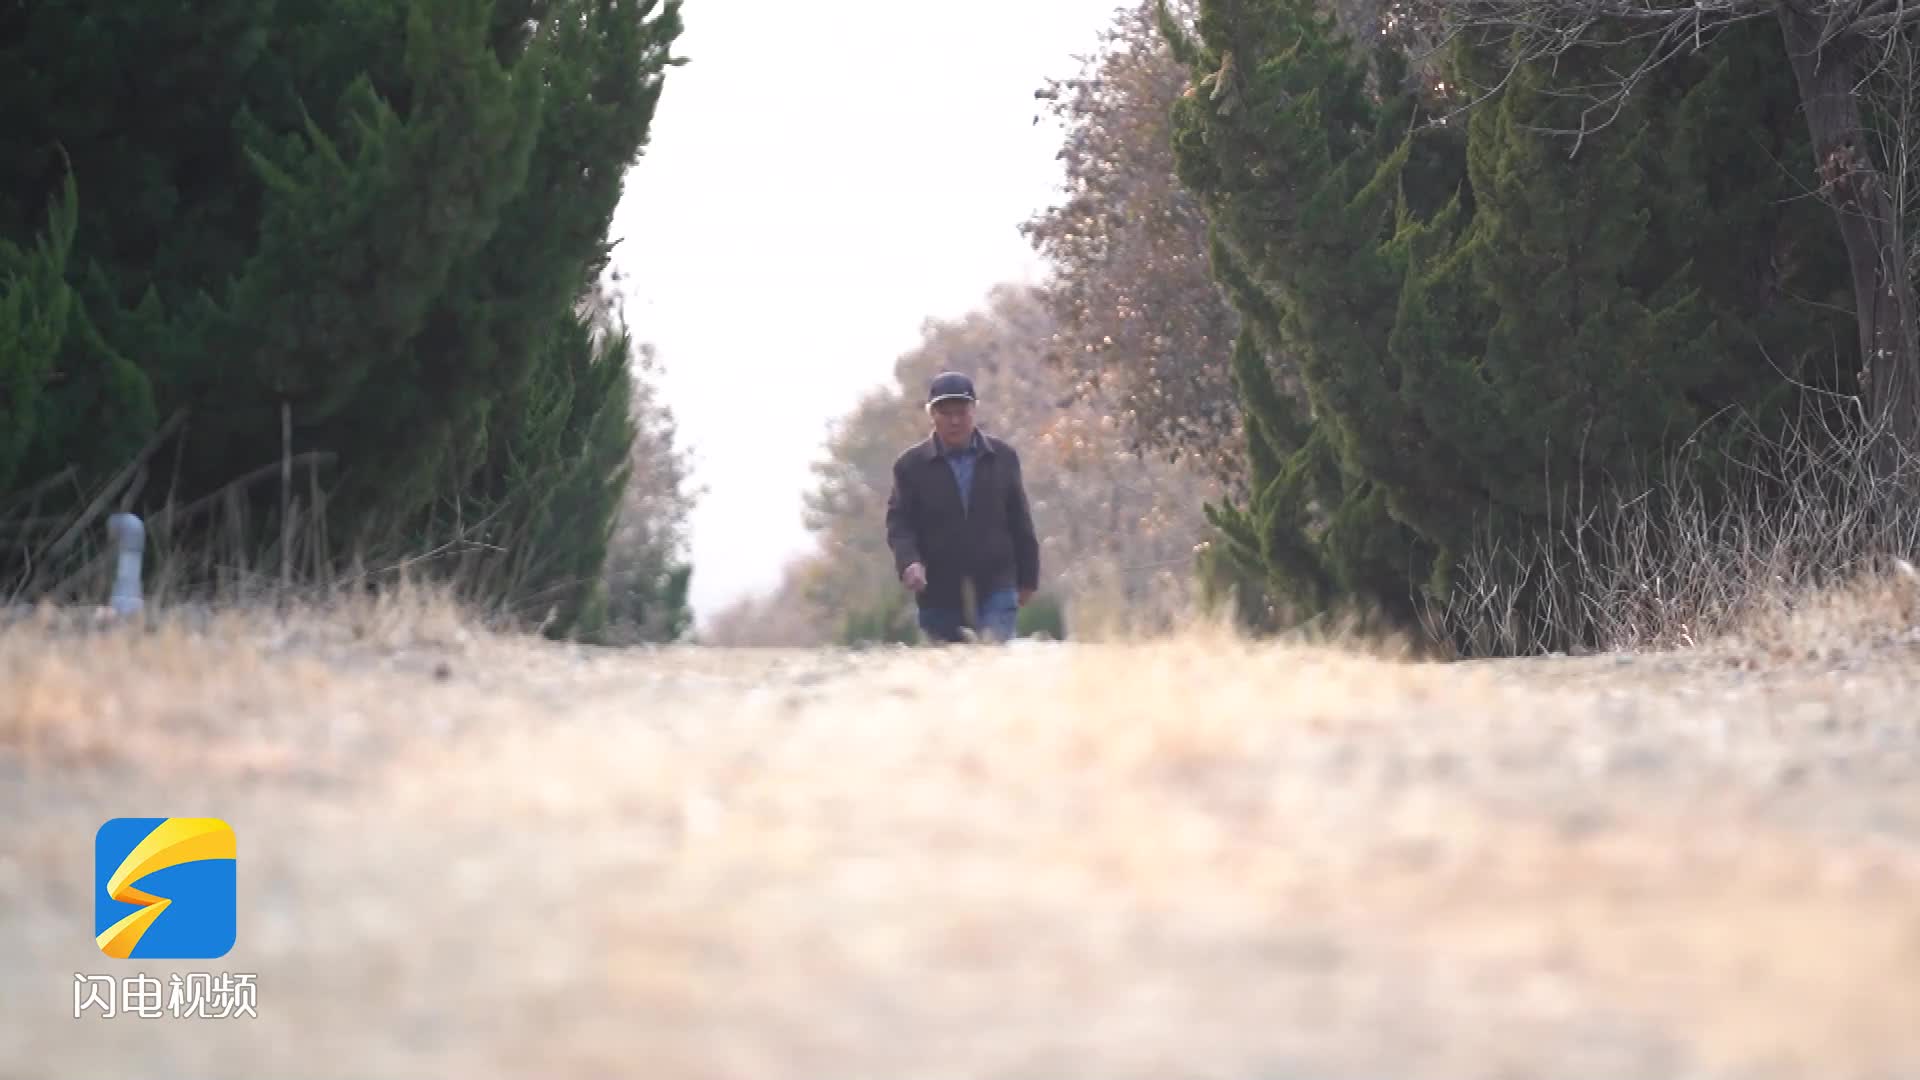 17年坚守种树20余万株 莱州73岁老人让家乡荒山绿了起来